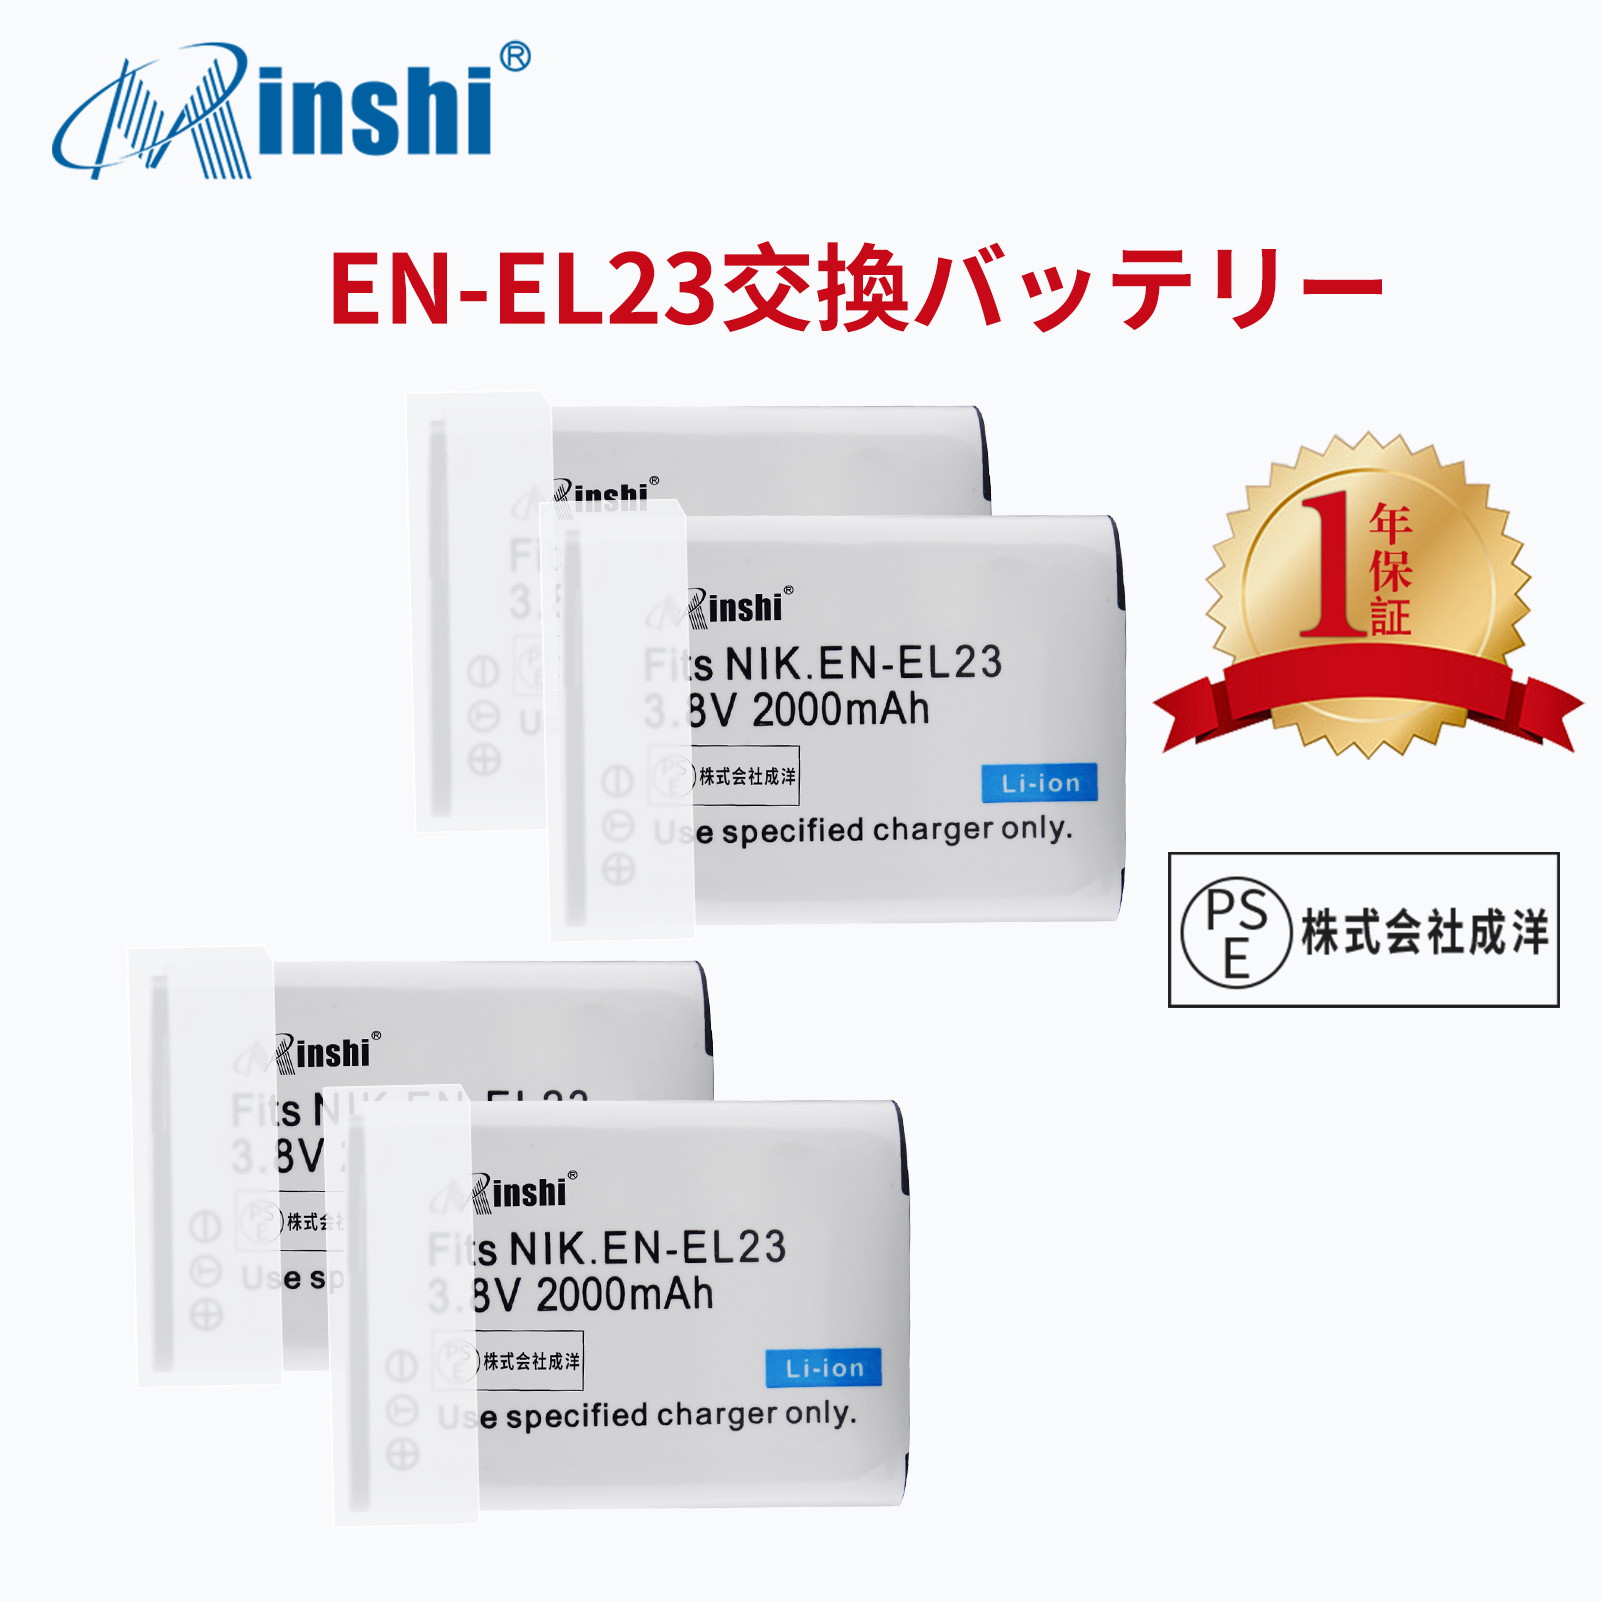 【4個セット】 minshi NIKON  1D300 B700 対応 EN-EL23 互換バッテリー 2000mAh PSE認定済 高品質交換用バッテリー